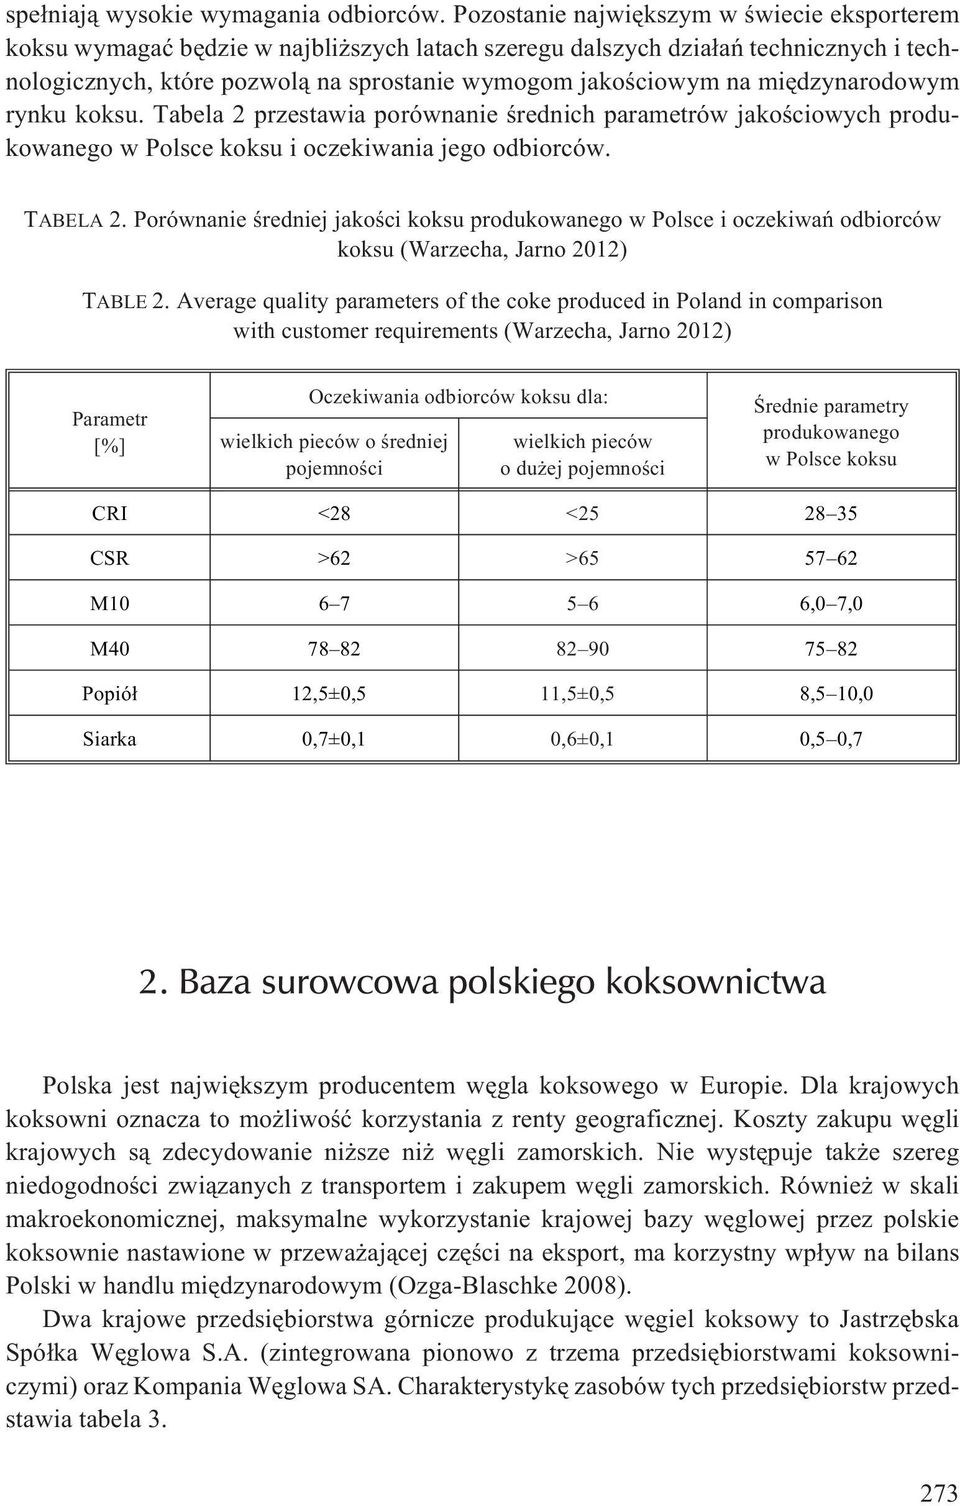 miêdzynarodowym rynku koksu. Tabela 2 przestawia porównanie œrednich parametrów jakoœciowych produkowanego w Polsce koksu i oczekiwania jego odbiorców. TABELA 2.